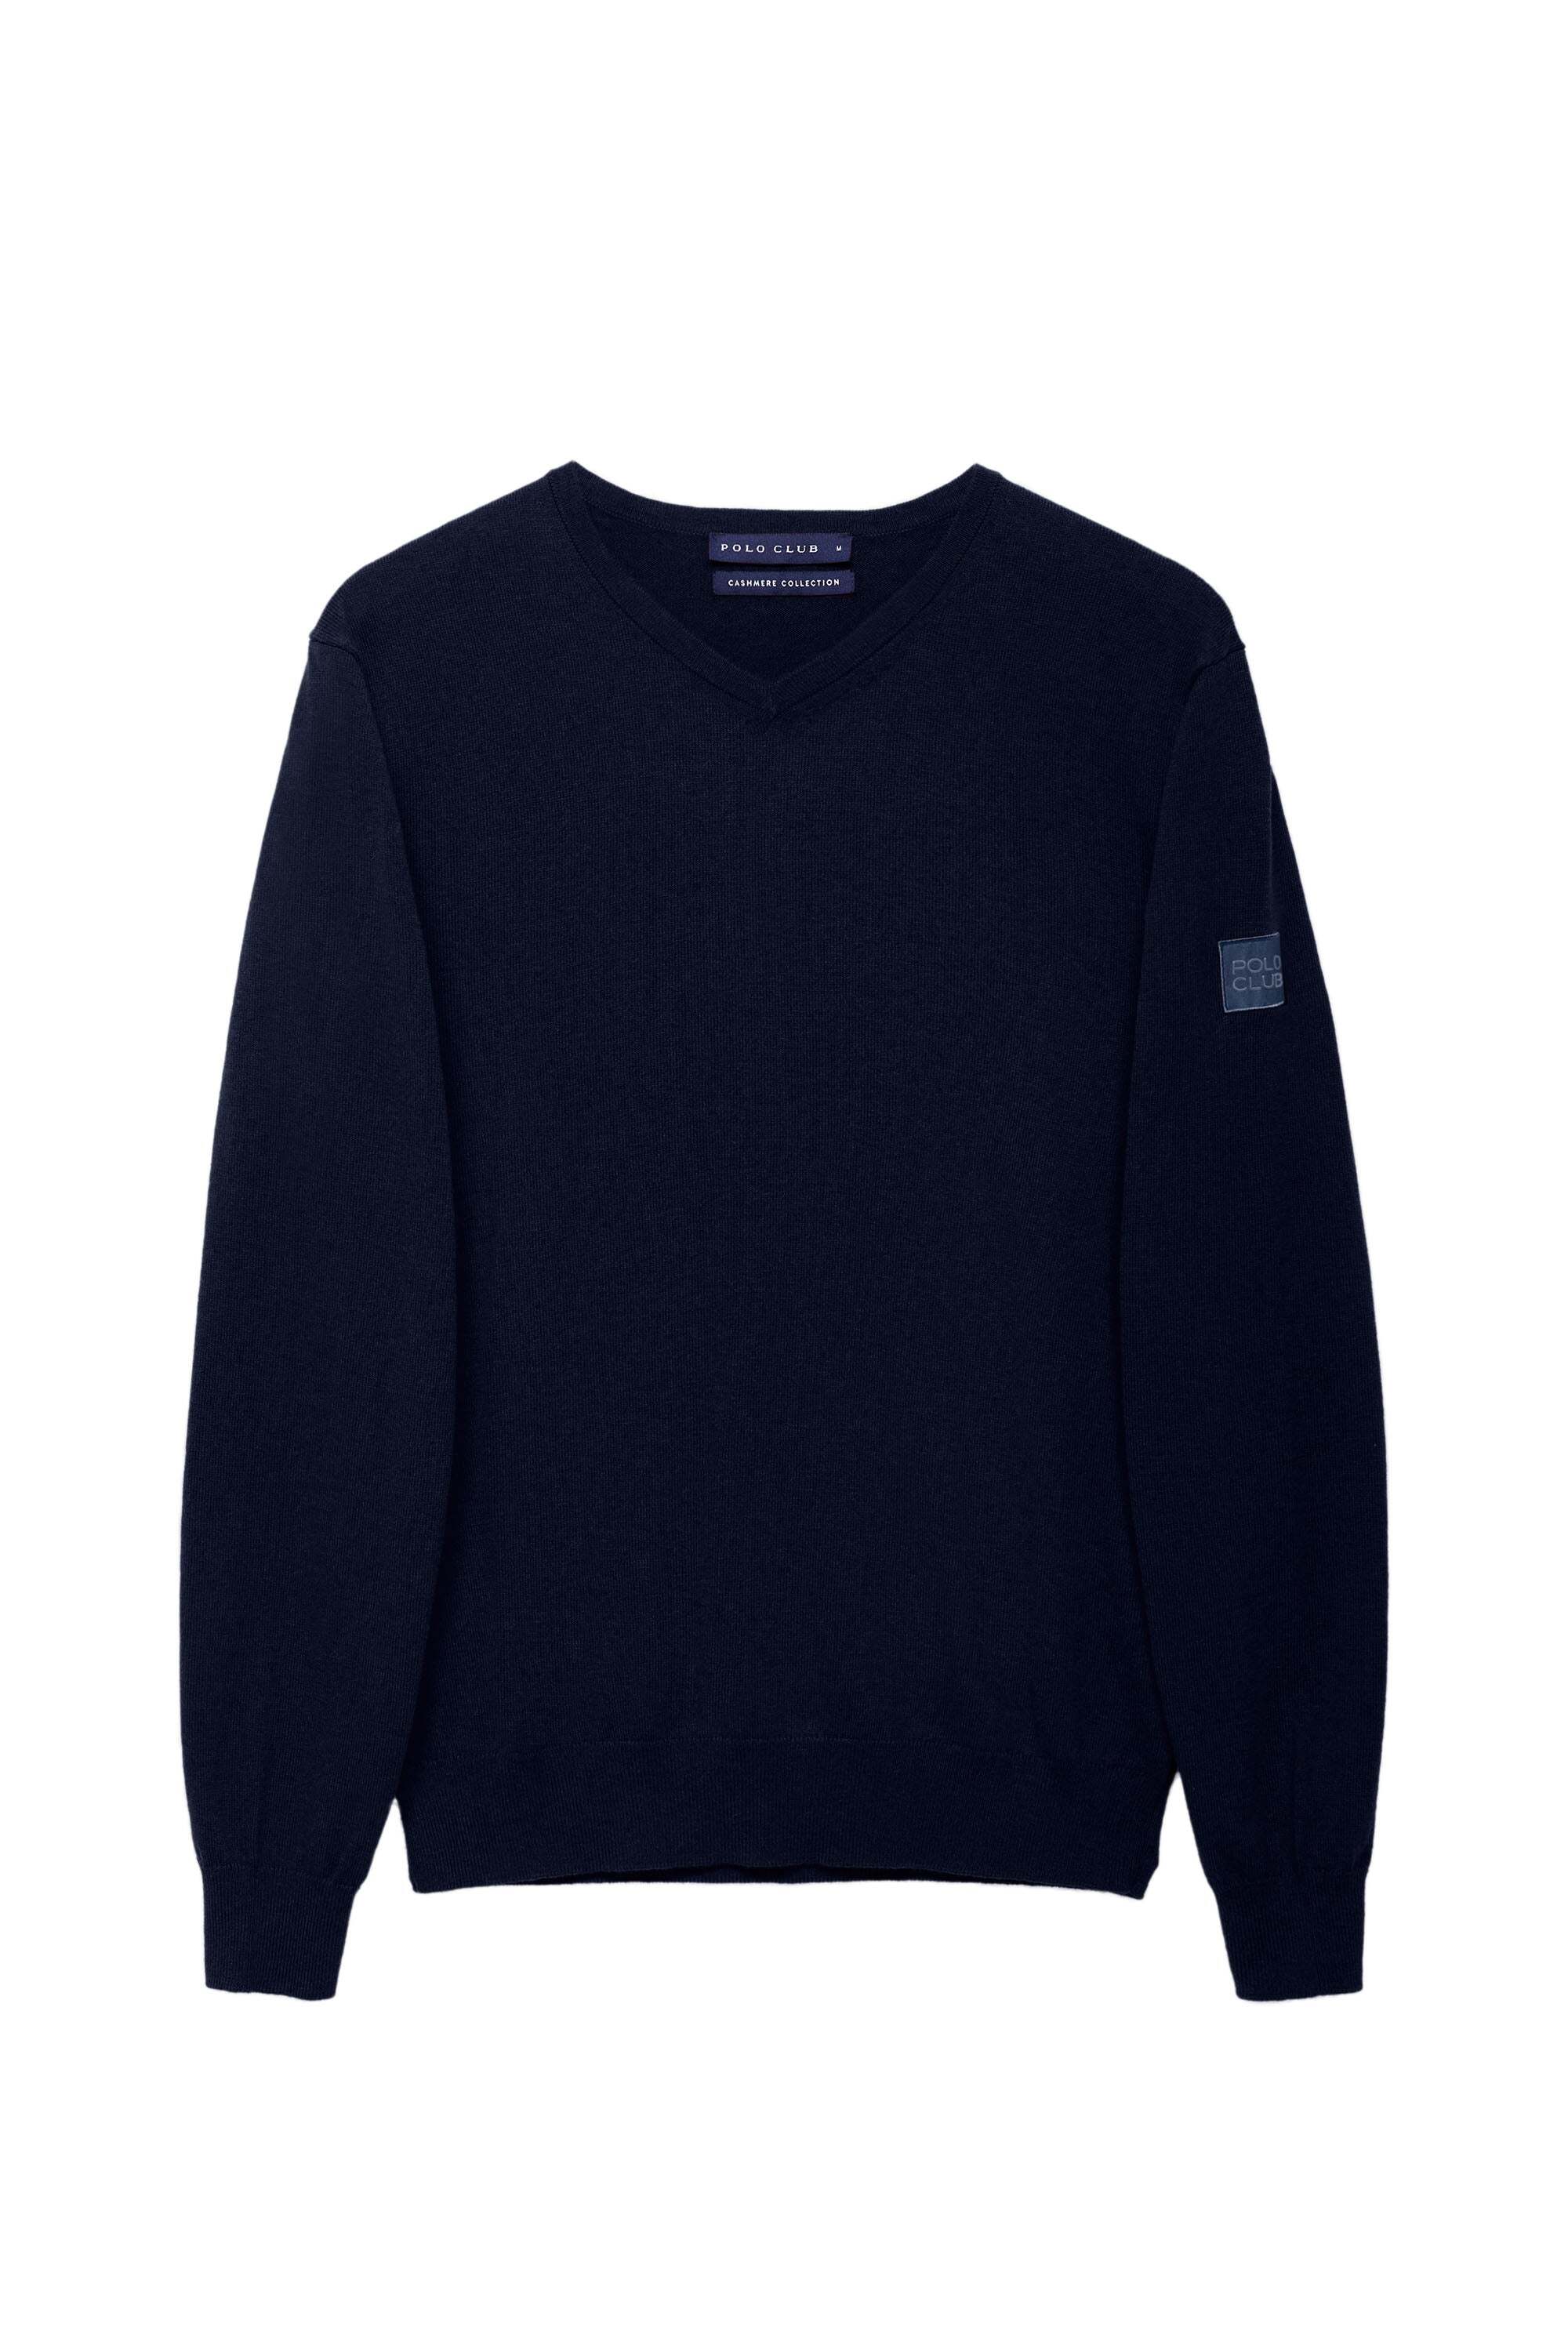 Пуловер Polo Club, темно синий